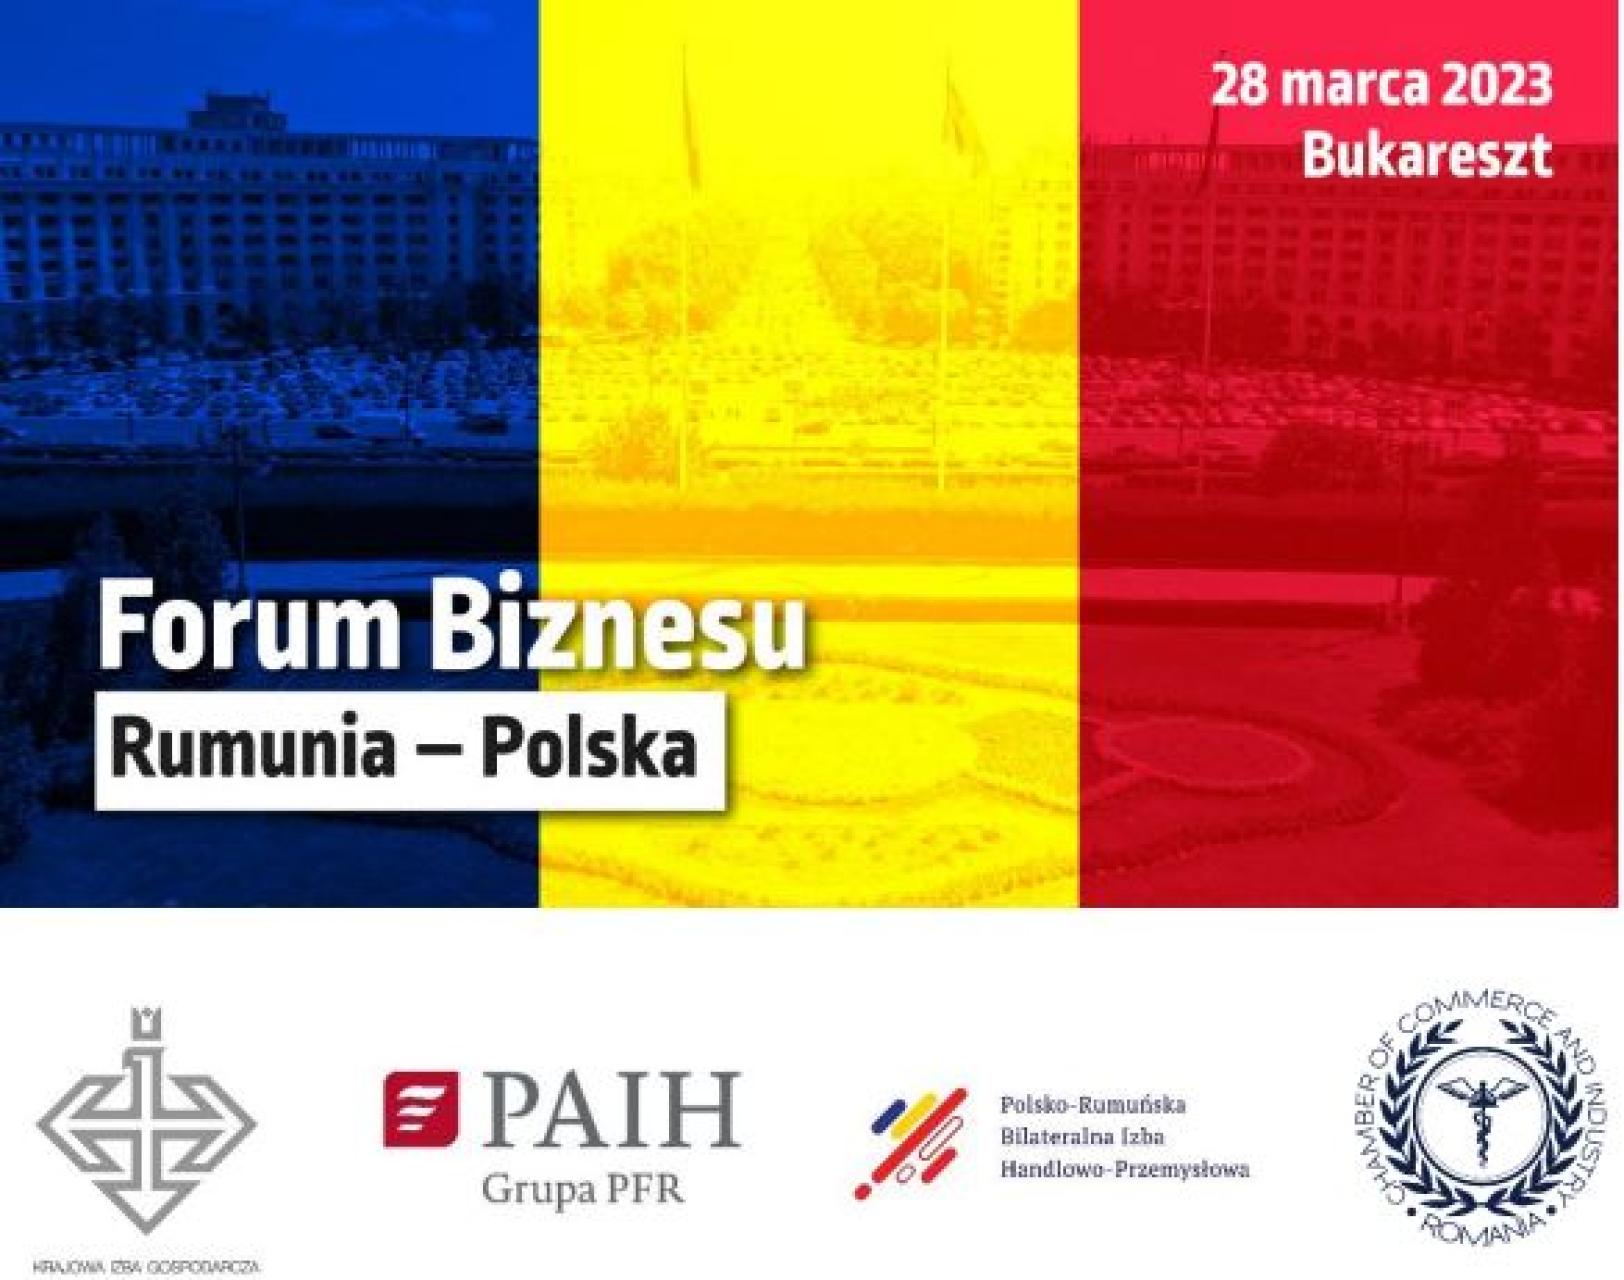 Rumuńsko-Polskie Forum Biznesu 